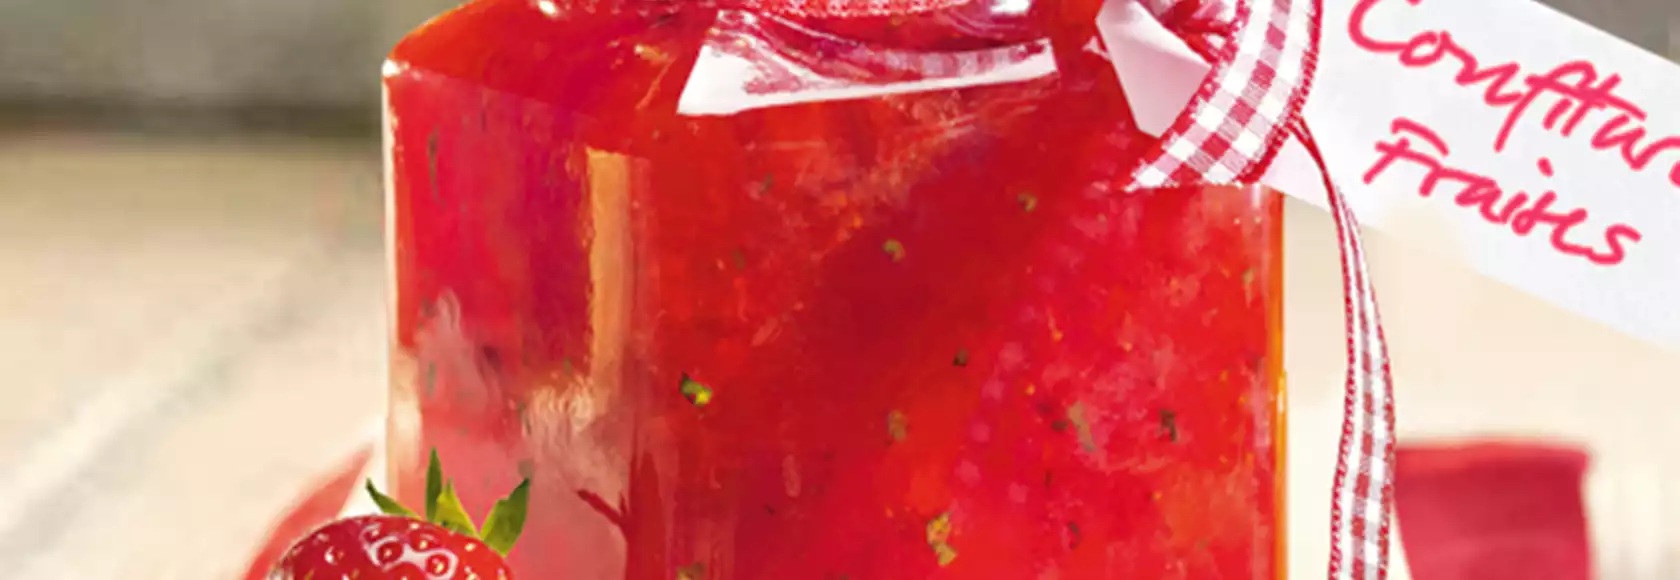 recette de confiture pomme-fraise-rhubarbe